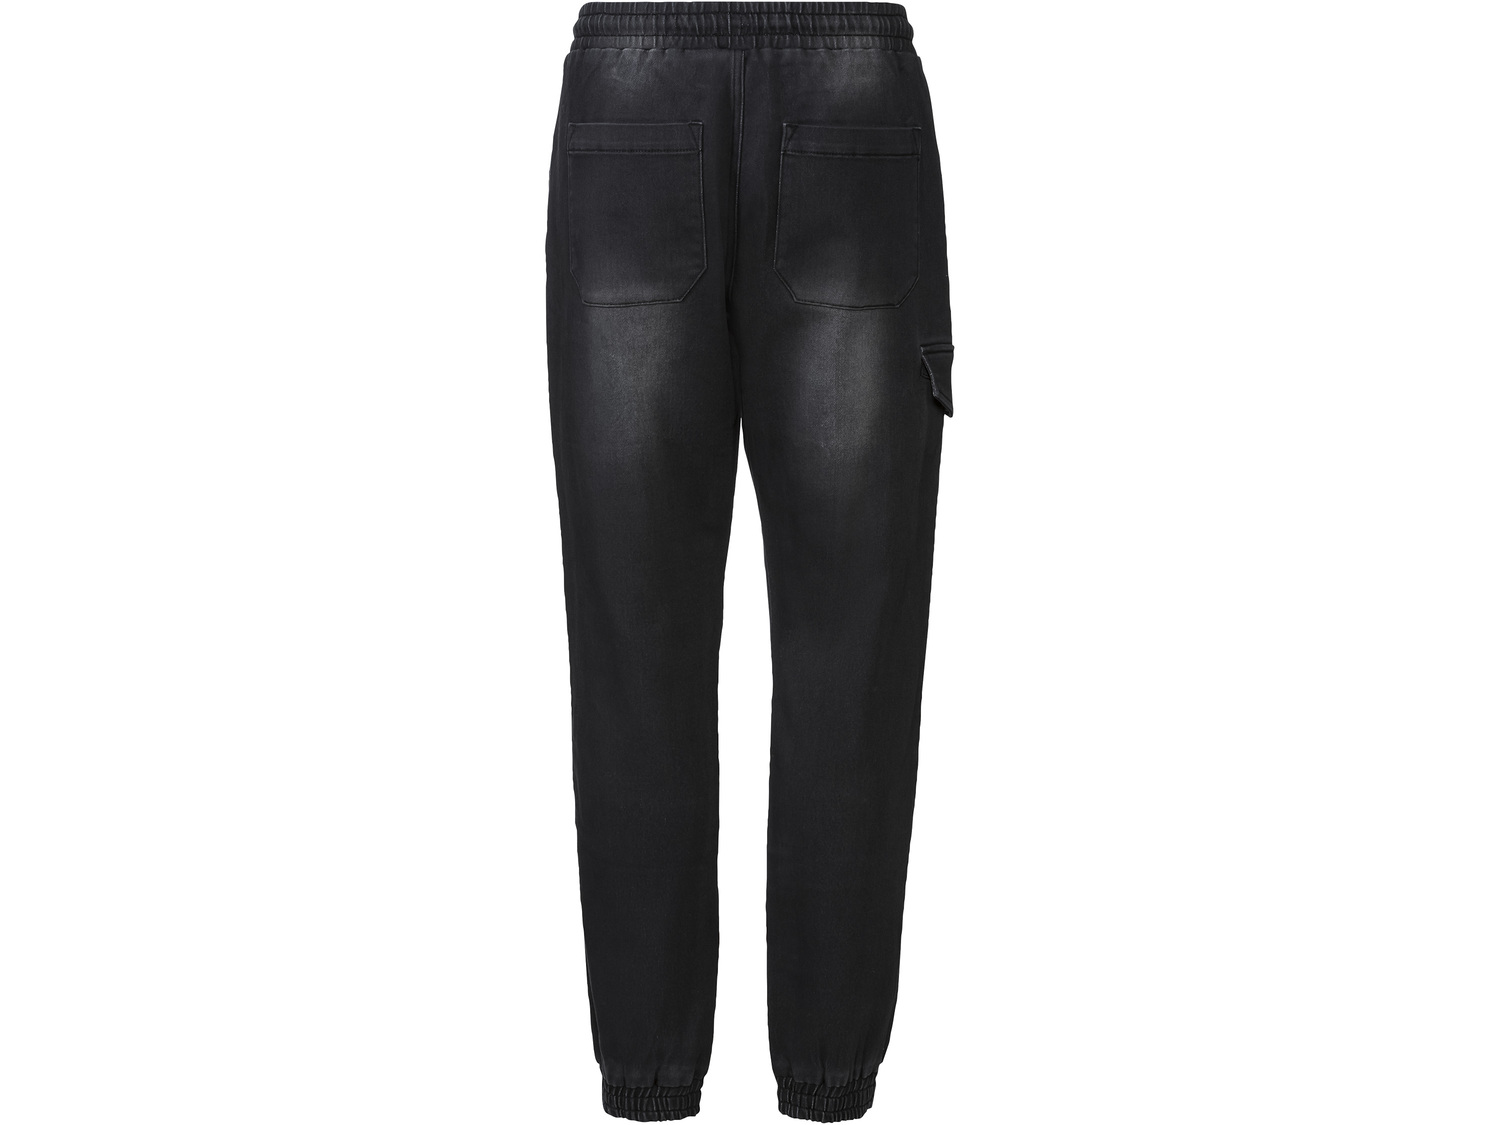 Joggery Livergy, cena 39,99 PLN 
- wysoka zawartość bawełny
- jeans o wygodzie ...